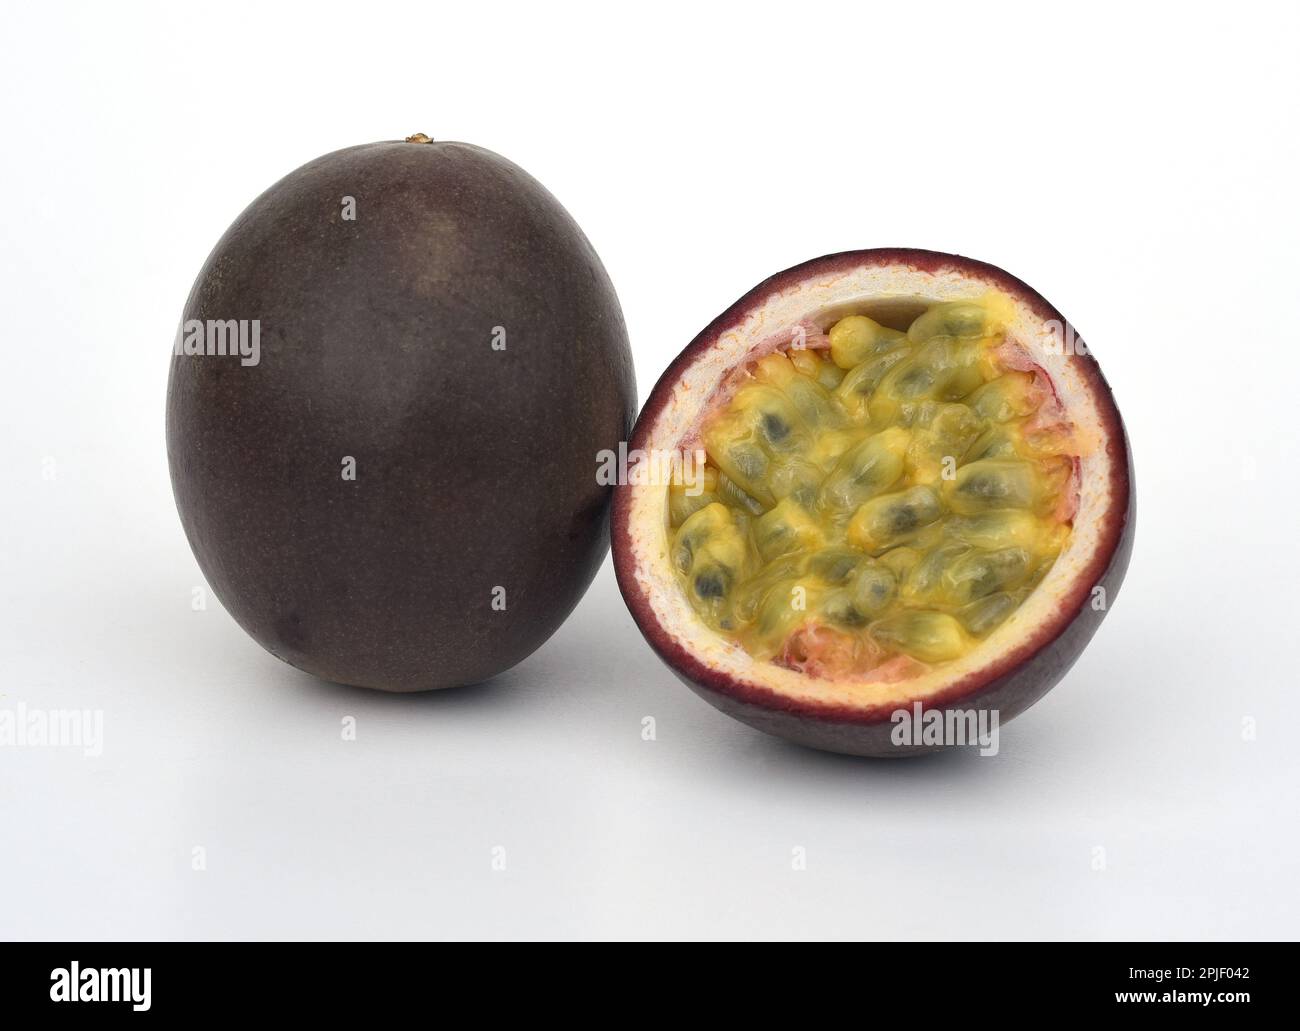 Passionsfrucht, eine aromatische Frucht, stamtt urspruengenlich aus Mittel- und Suedamerika, wird heute aber weltweit in den Subtropen kultiviert. Passi Banque D'Images